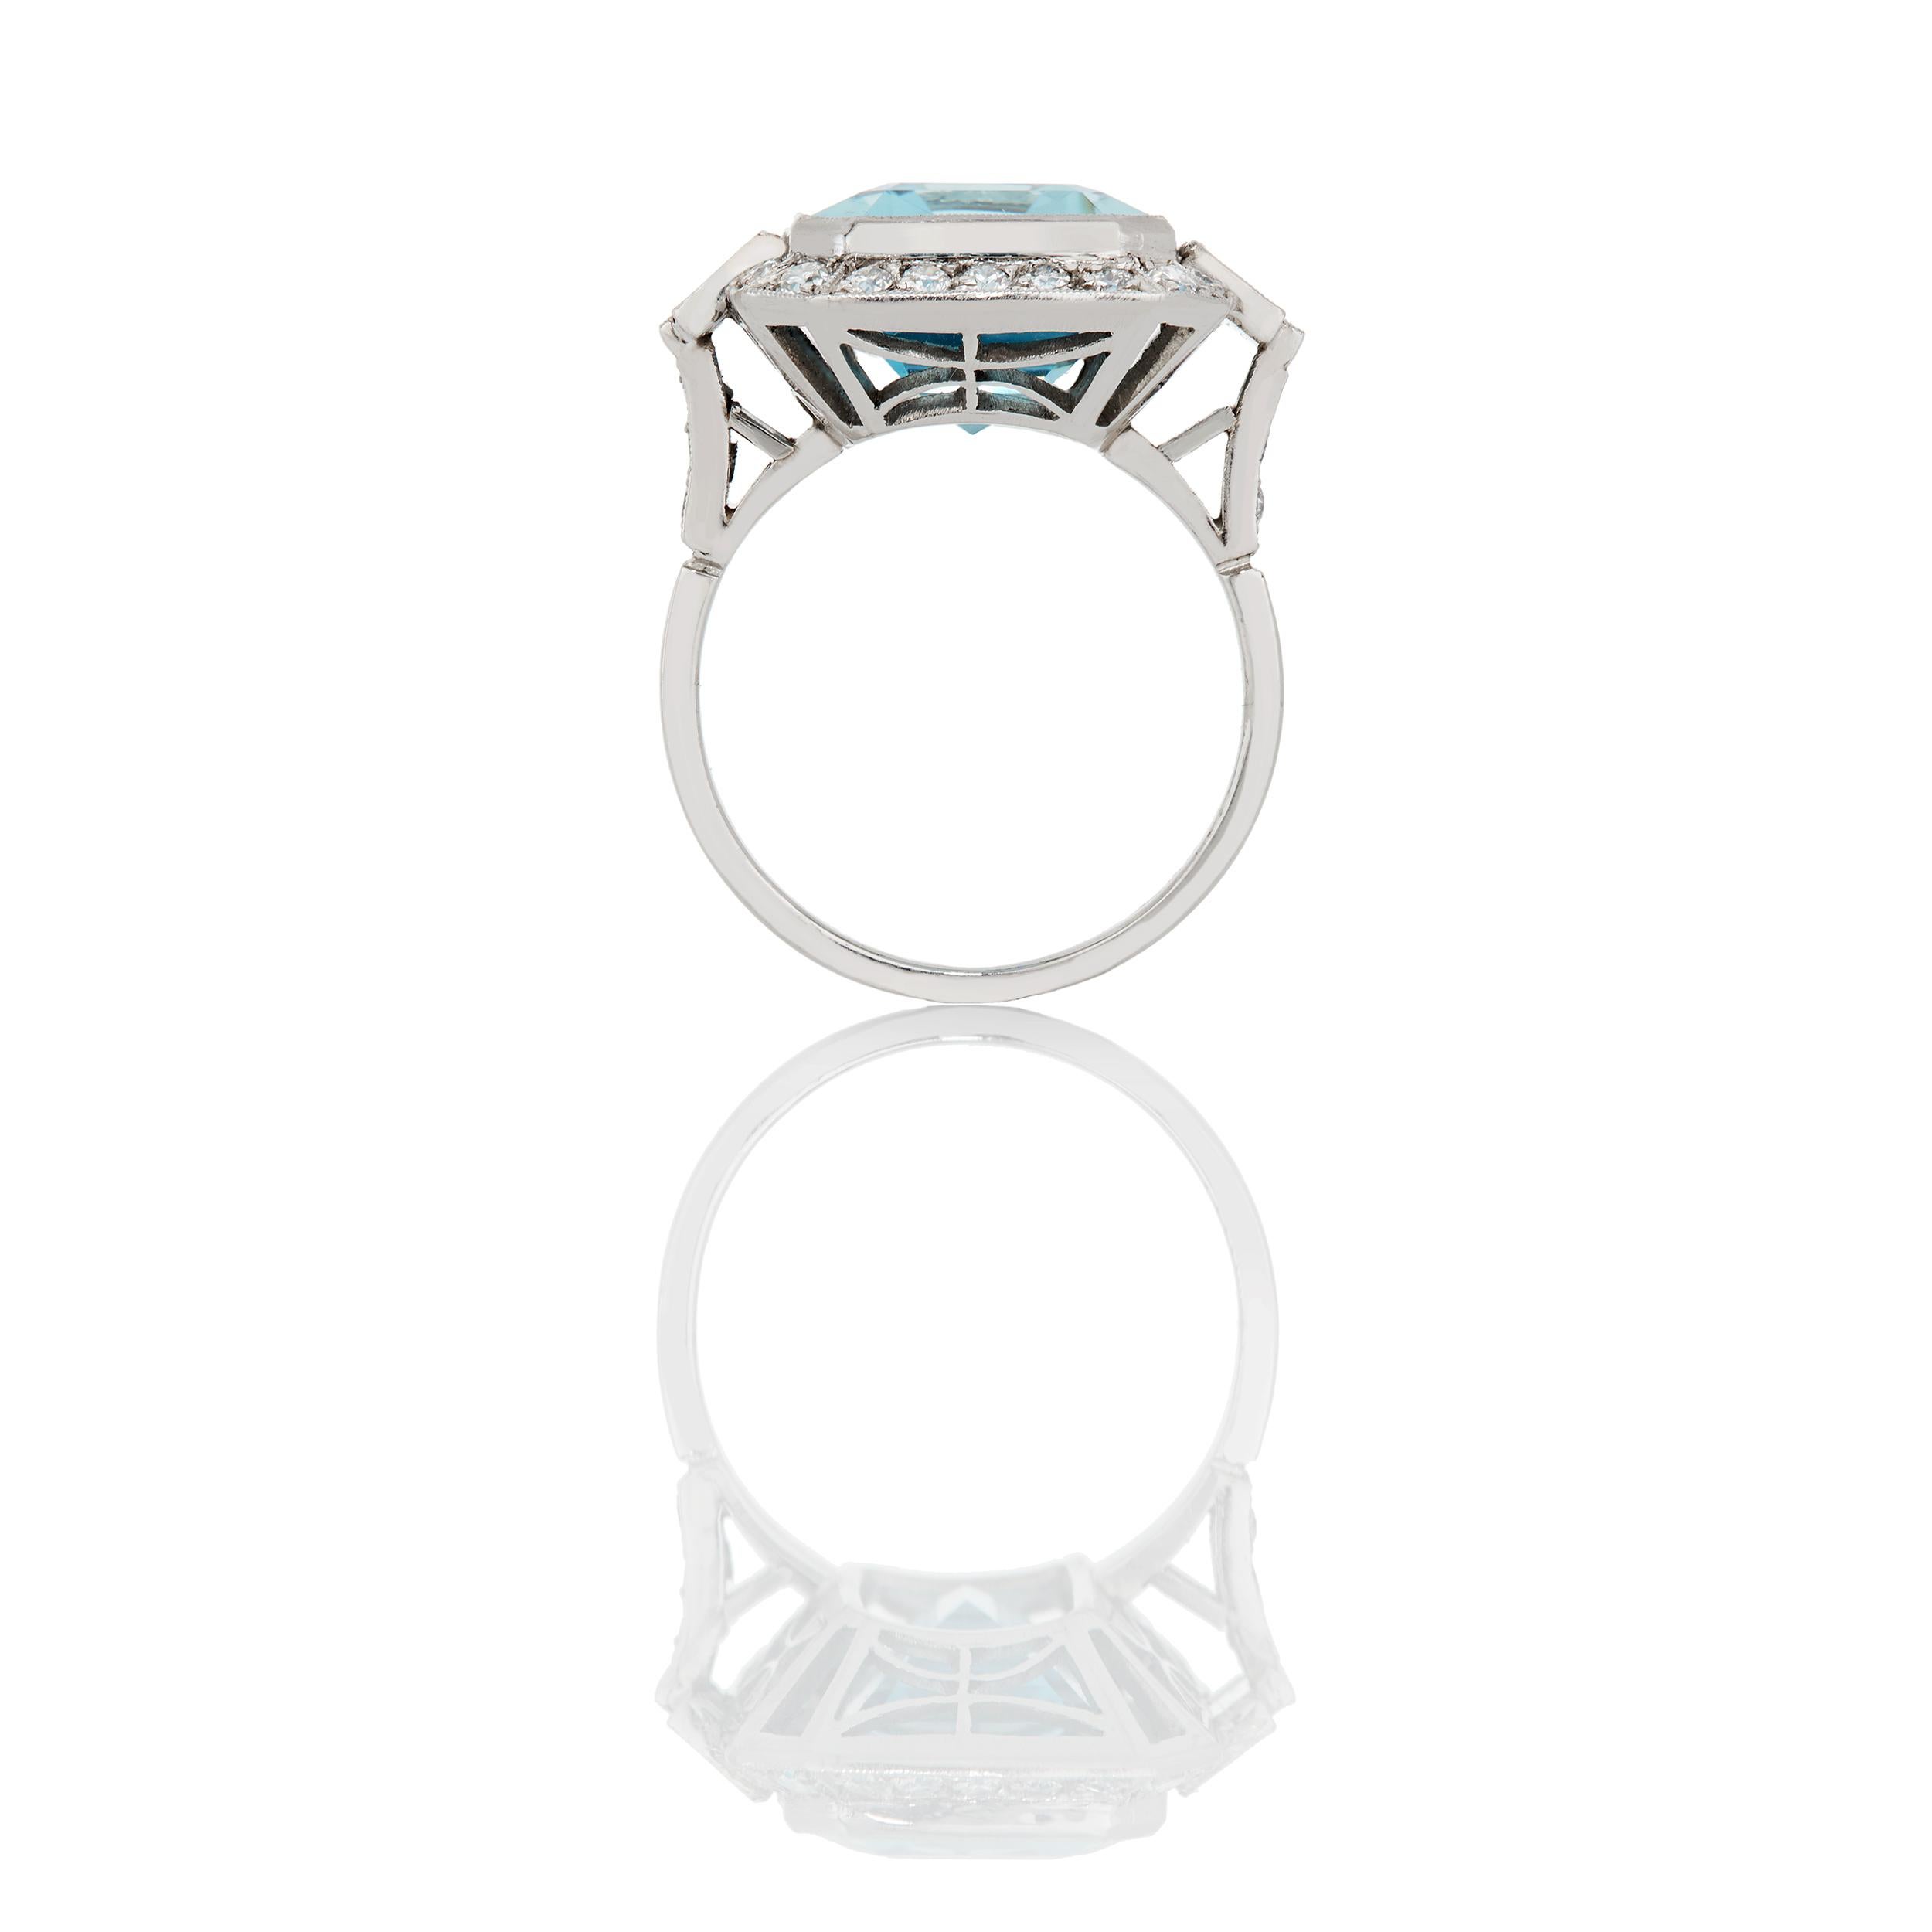 10 carat aquamarine ring